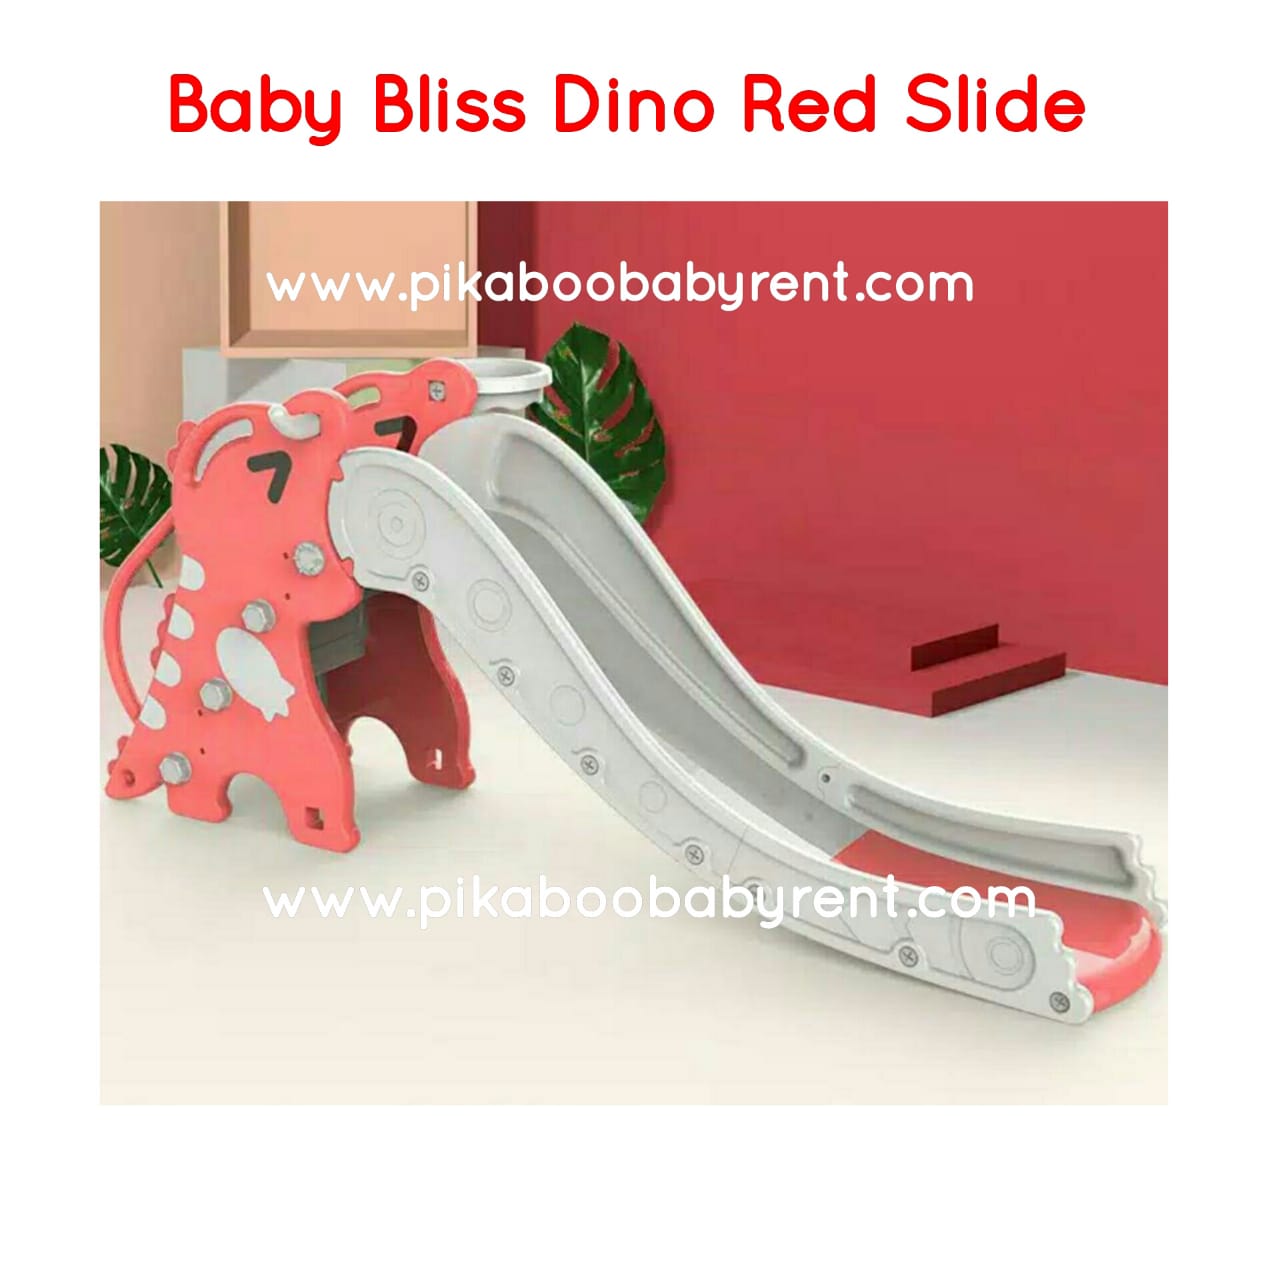 BABY BLISS DINO RED SLIDE